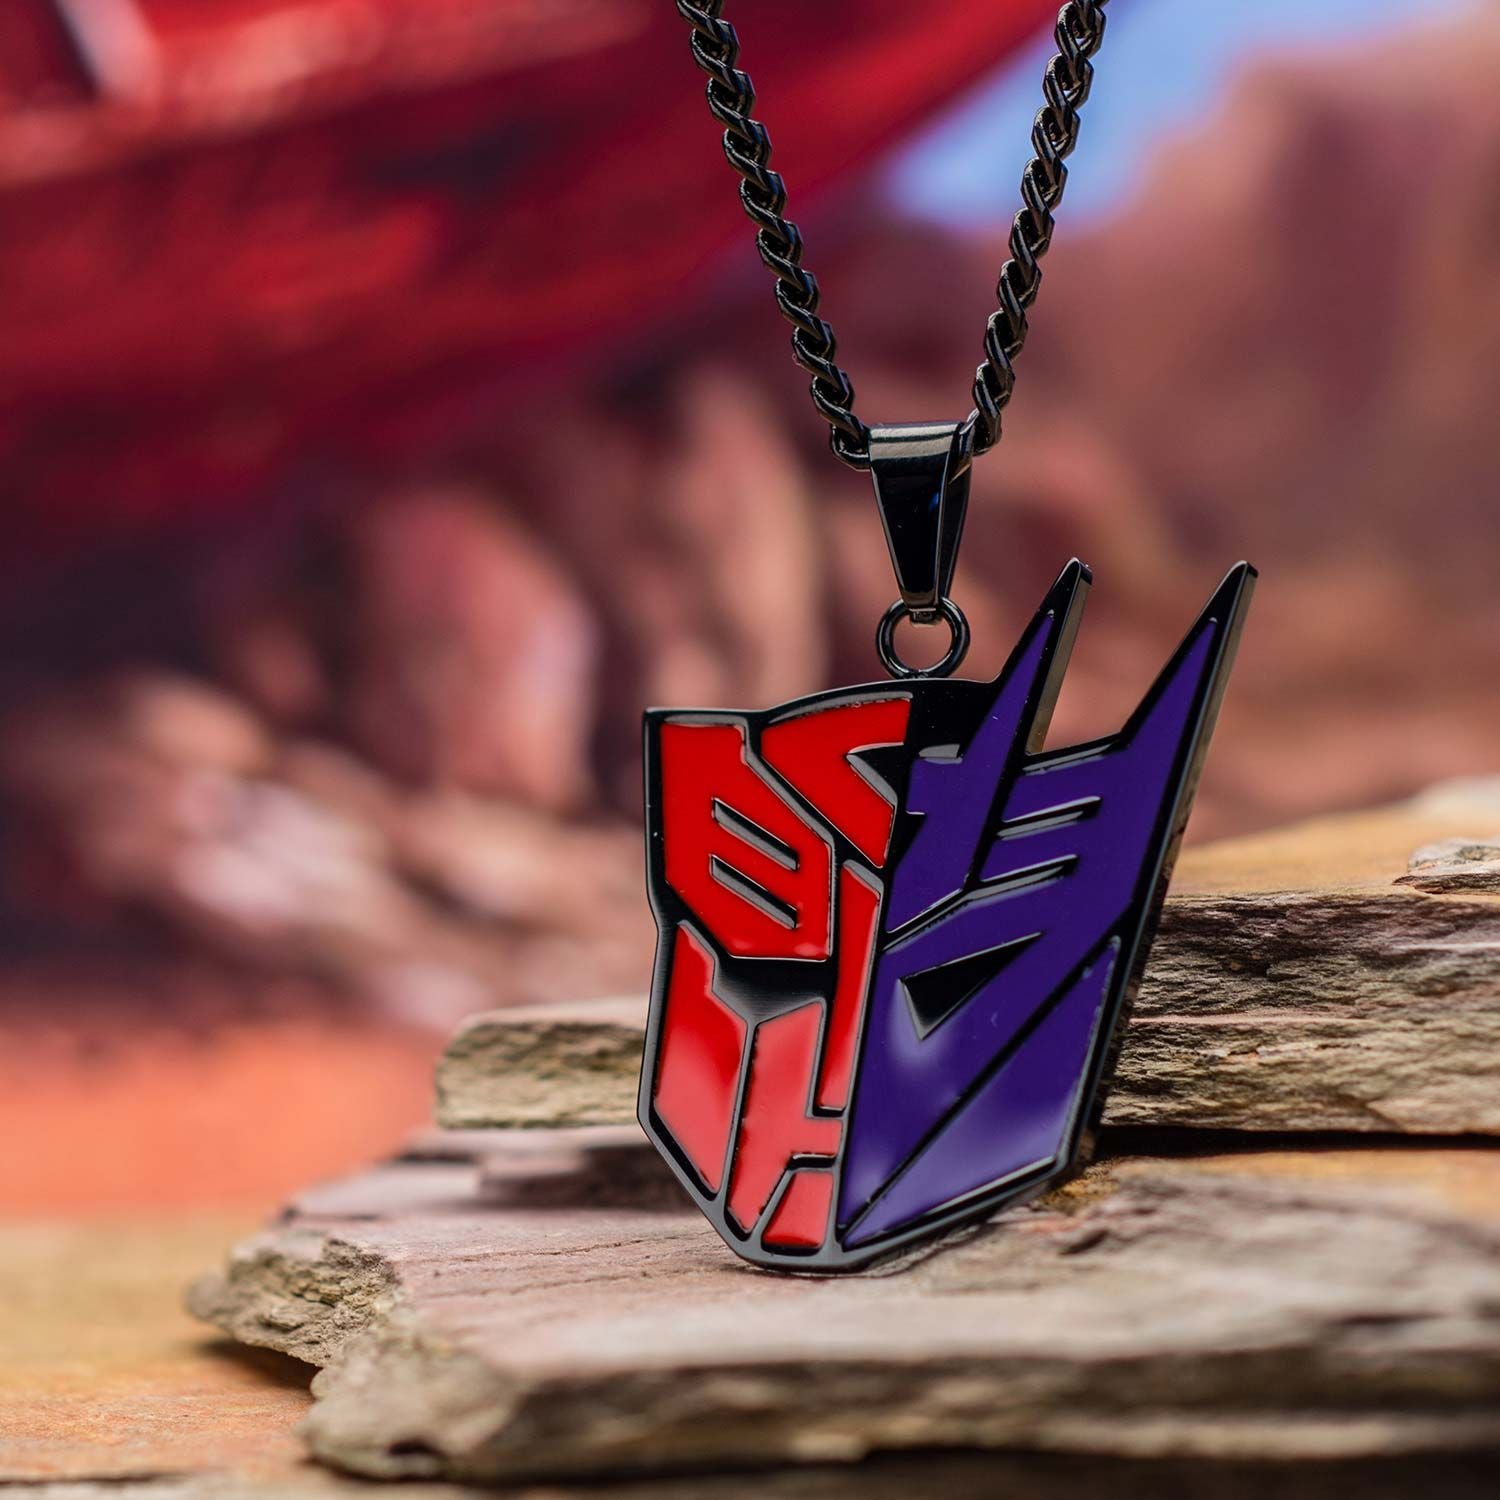 HASBRO Transformers Autobot Decepticon Pendant Necklace -Rebel Bod-RebelBod